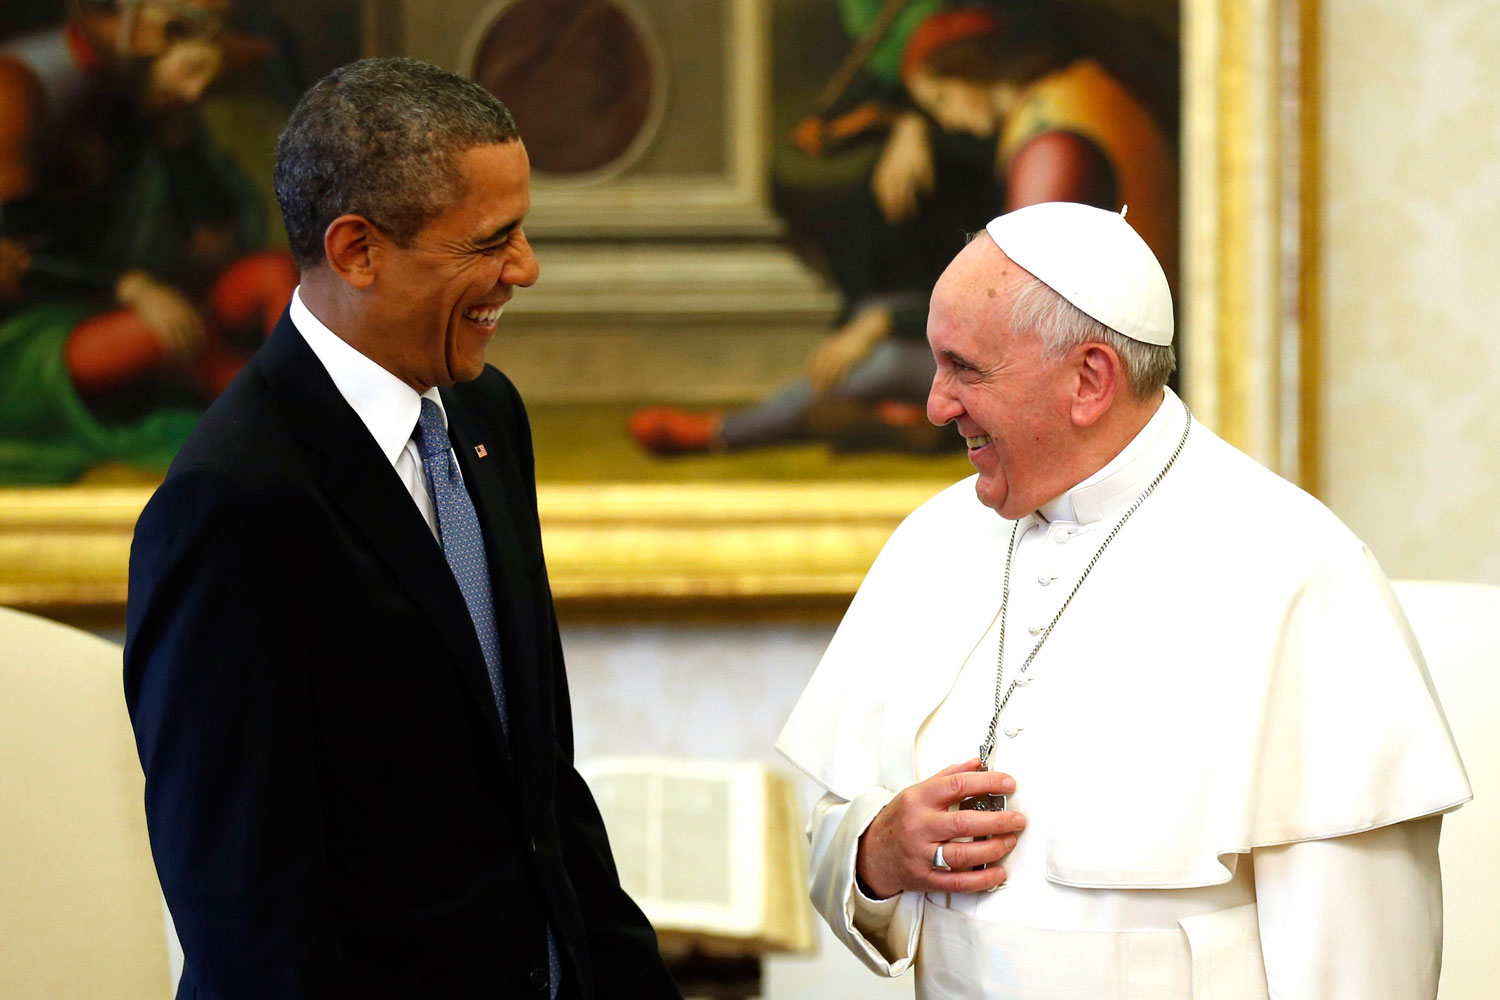 El Papa Francisco y Obama se reúnen bajo un impresionante despliegue de seguridad